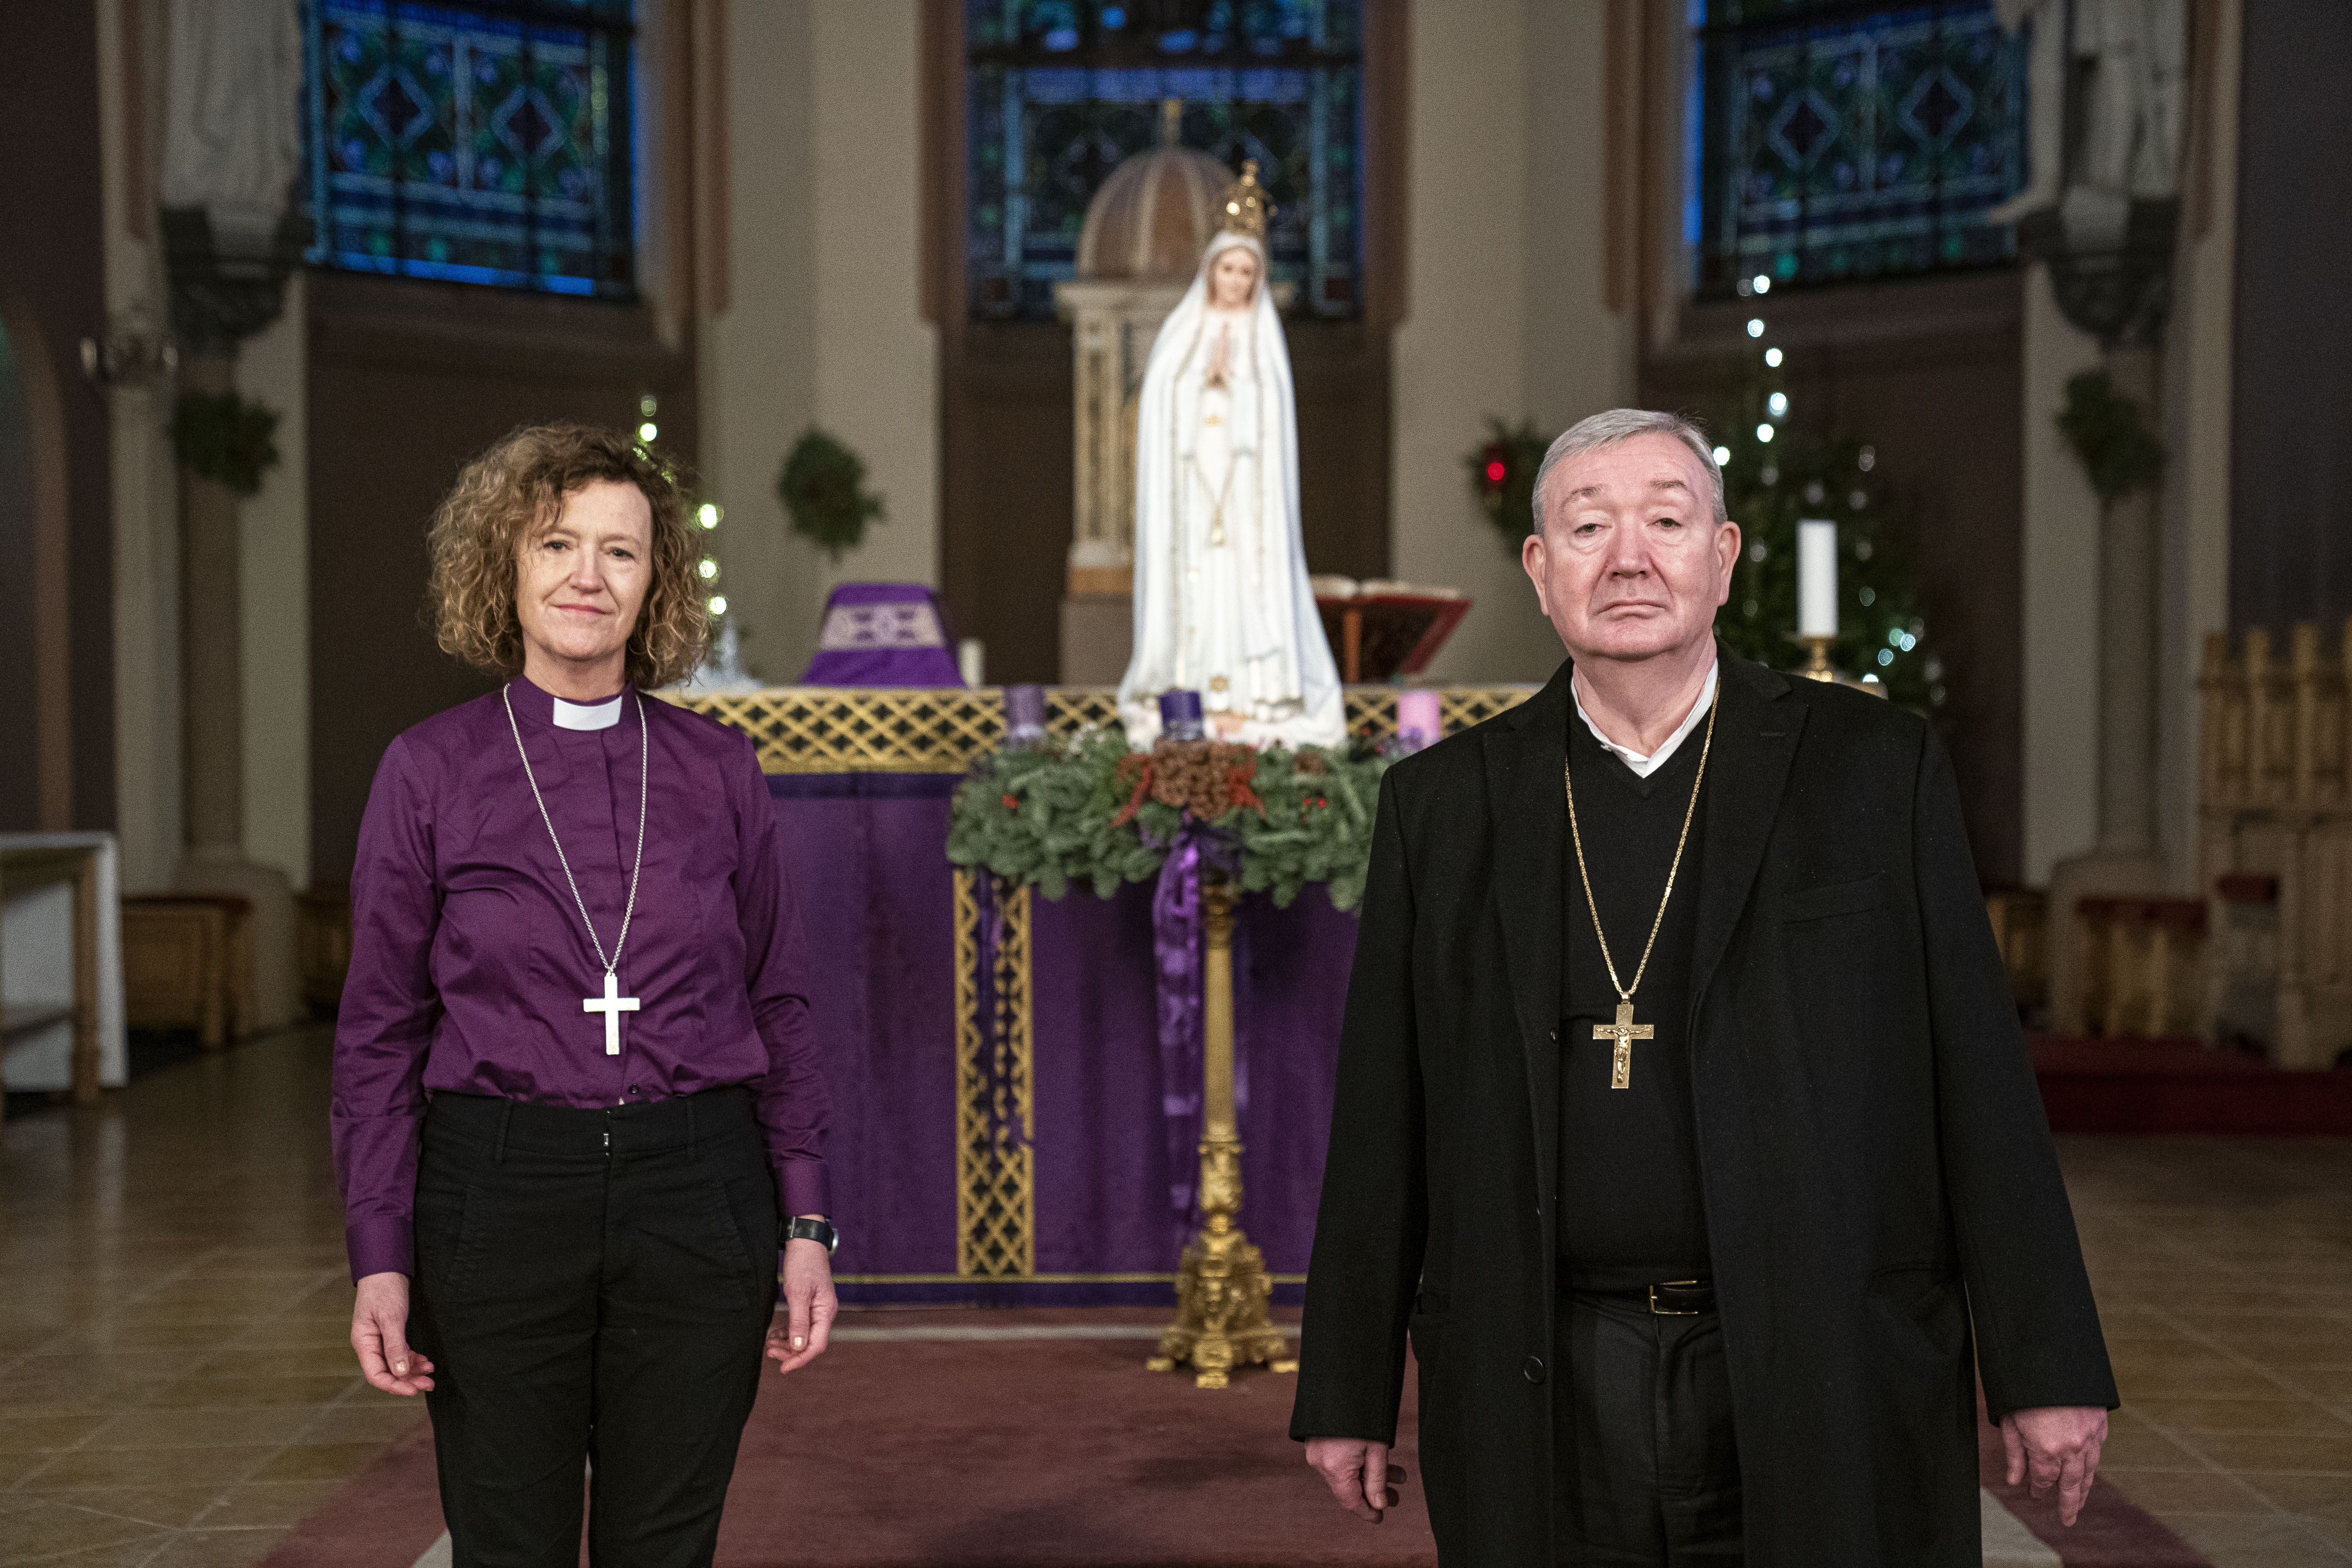 Oslo-biskoper med felles budskap: – La flere komme på julegudstjeneste